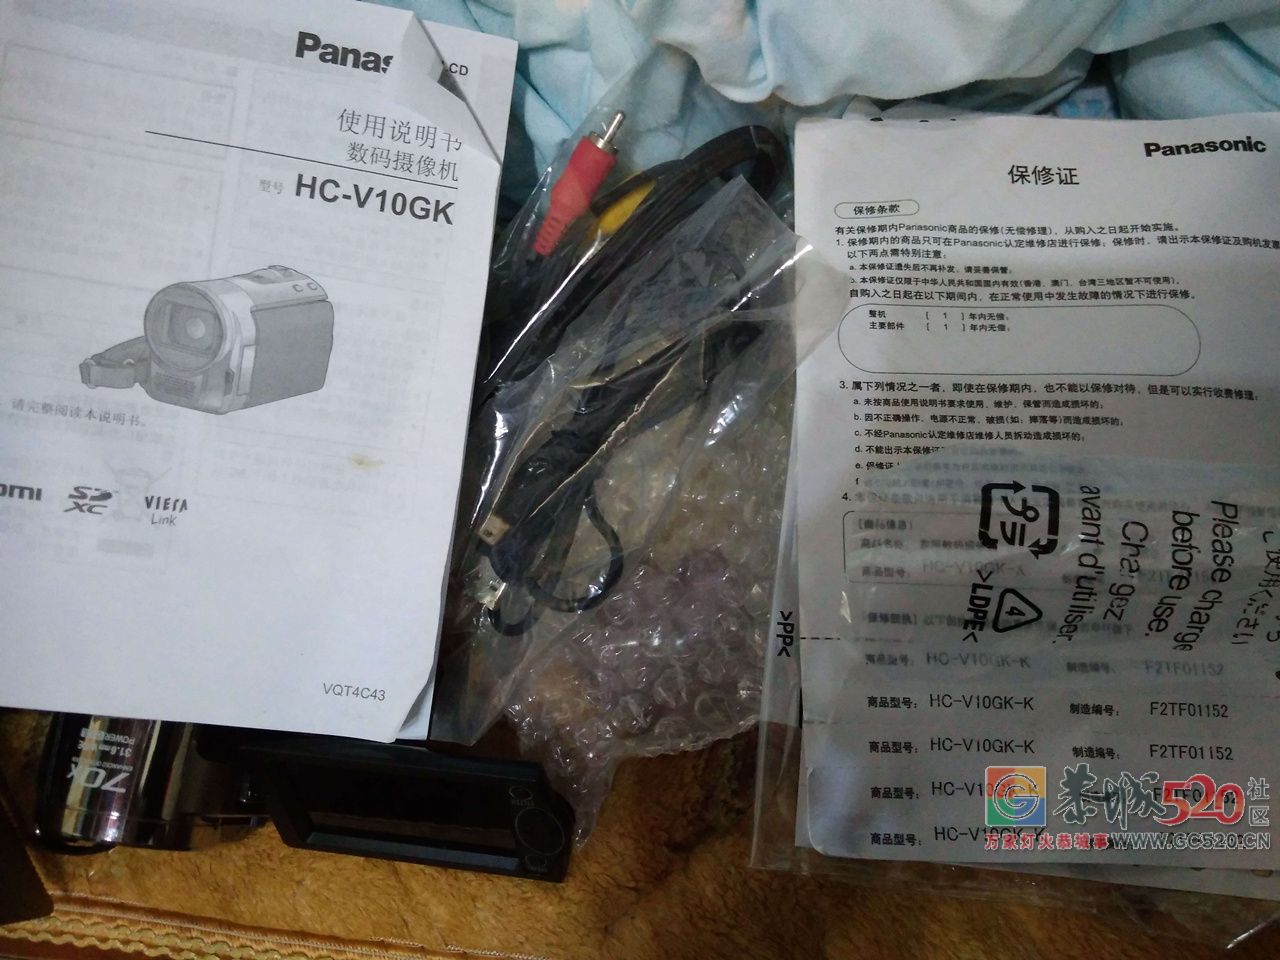 广西恭城出售一台一手自用松下 HC-V10GK高清数码摄像机【支持全国邮购和当面购买】409 / 作者:有瘾头 / 帖子ID:261788